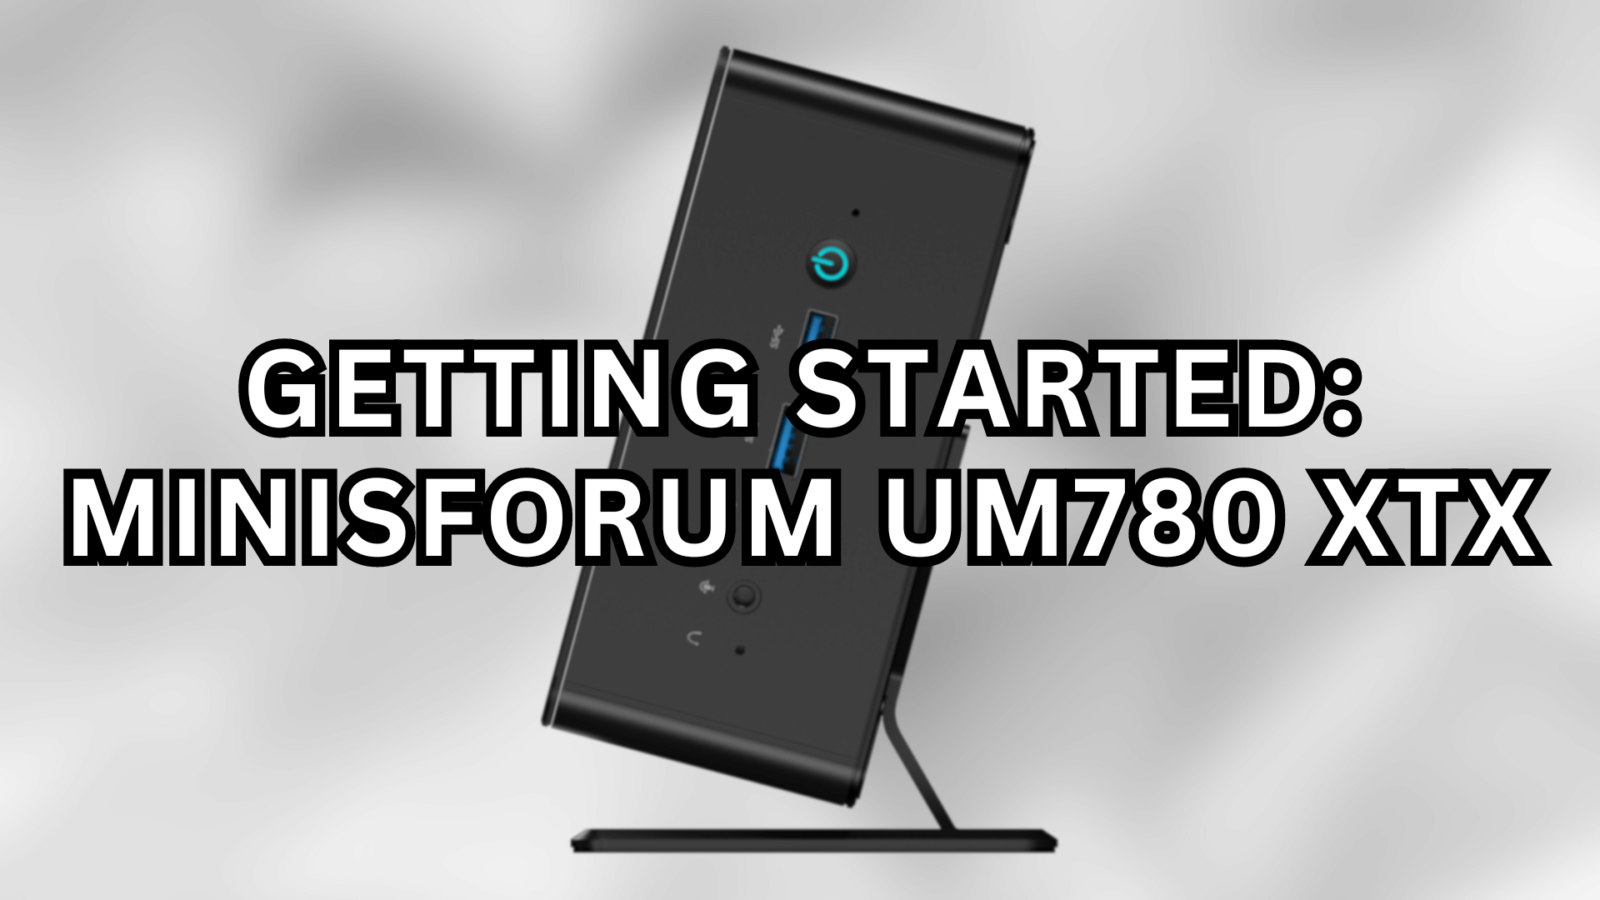 Getting Started: Minisforum UM780 XTX